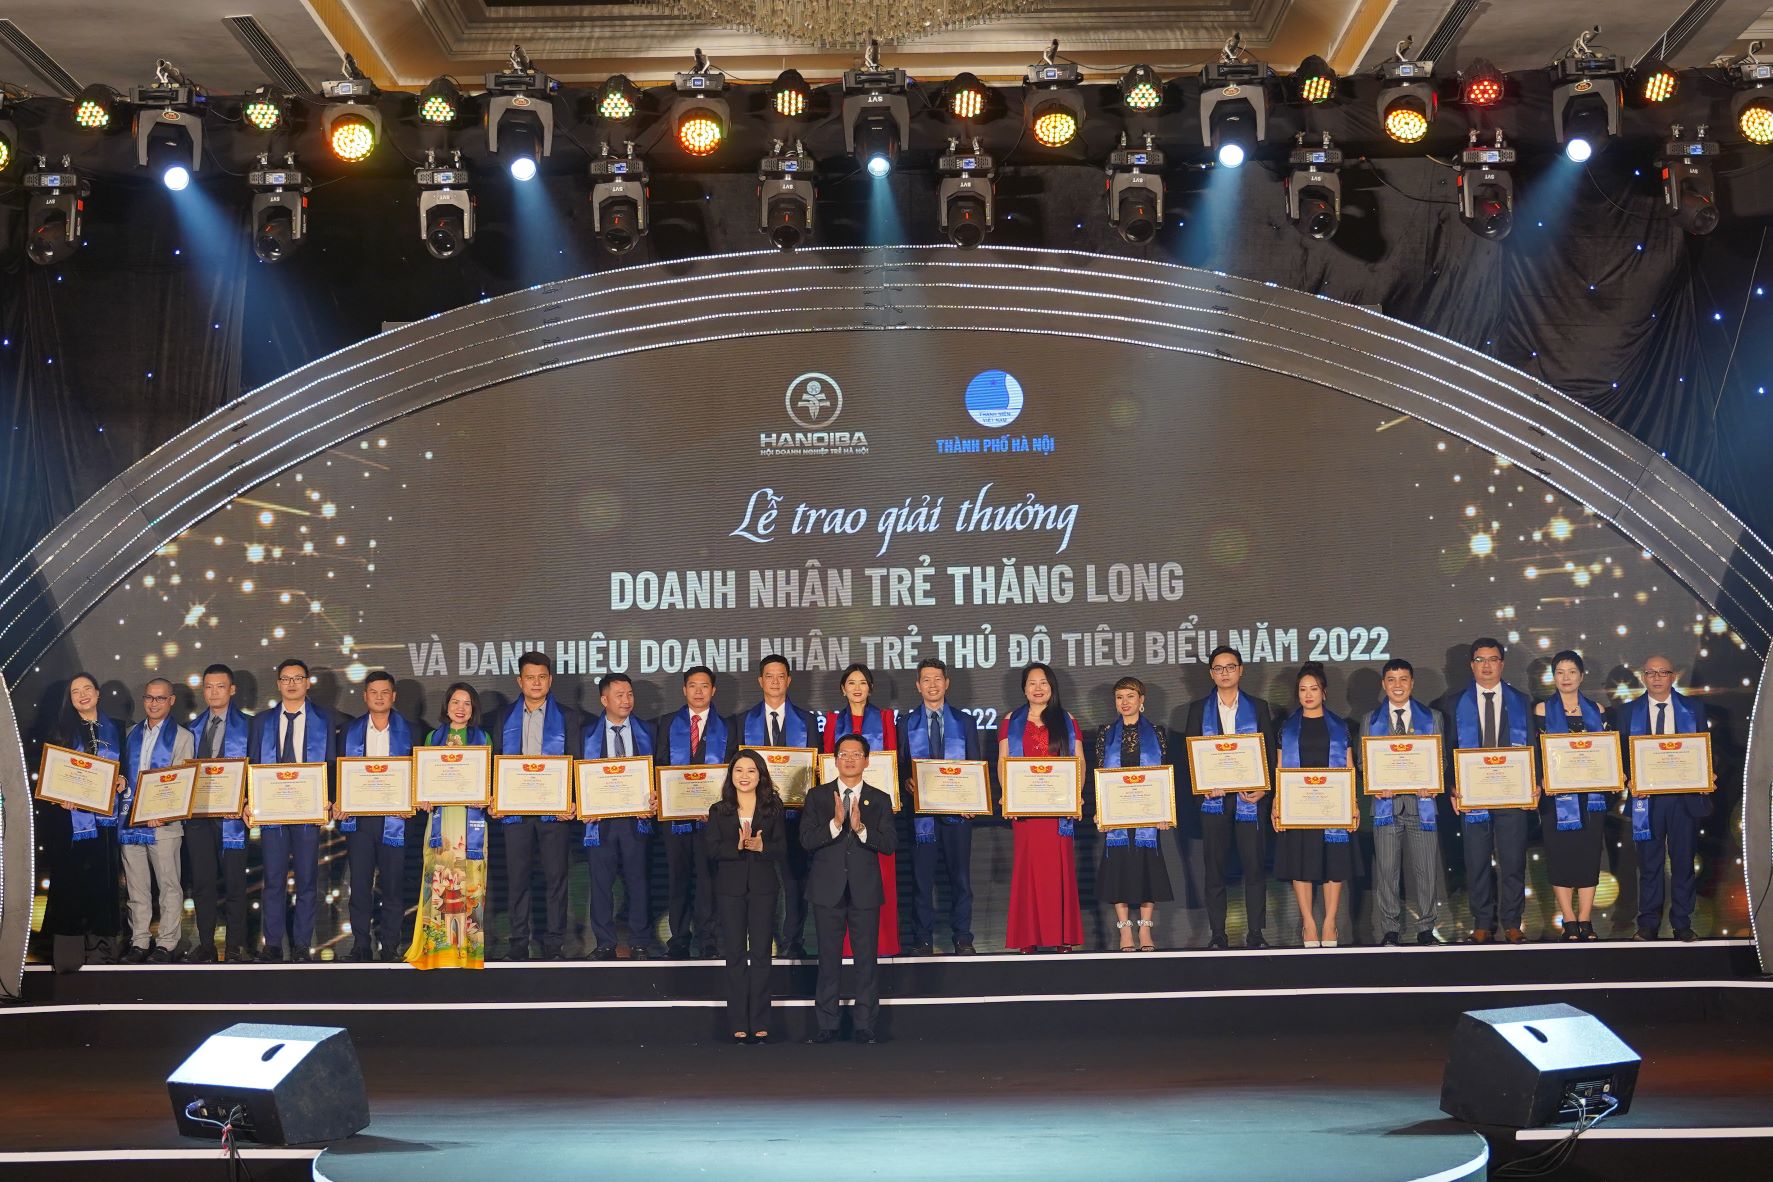 Lễ trao giải thưởng Doanh nhân trẻ Thăng Long và Doanh nhân trẻ Thủ đô tiêu biểu 2022